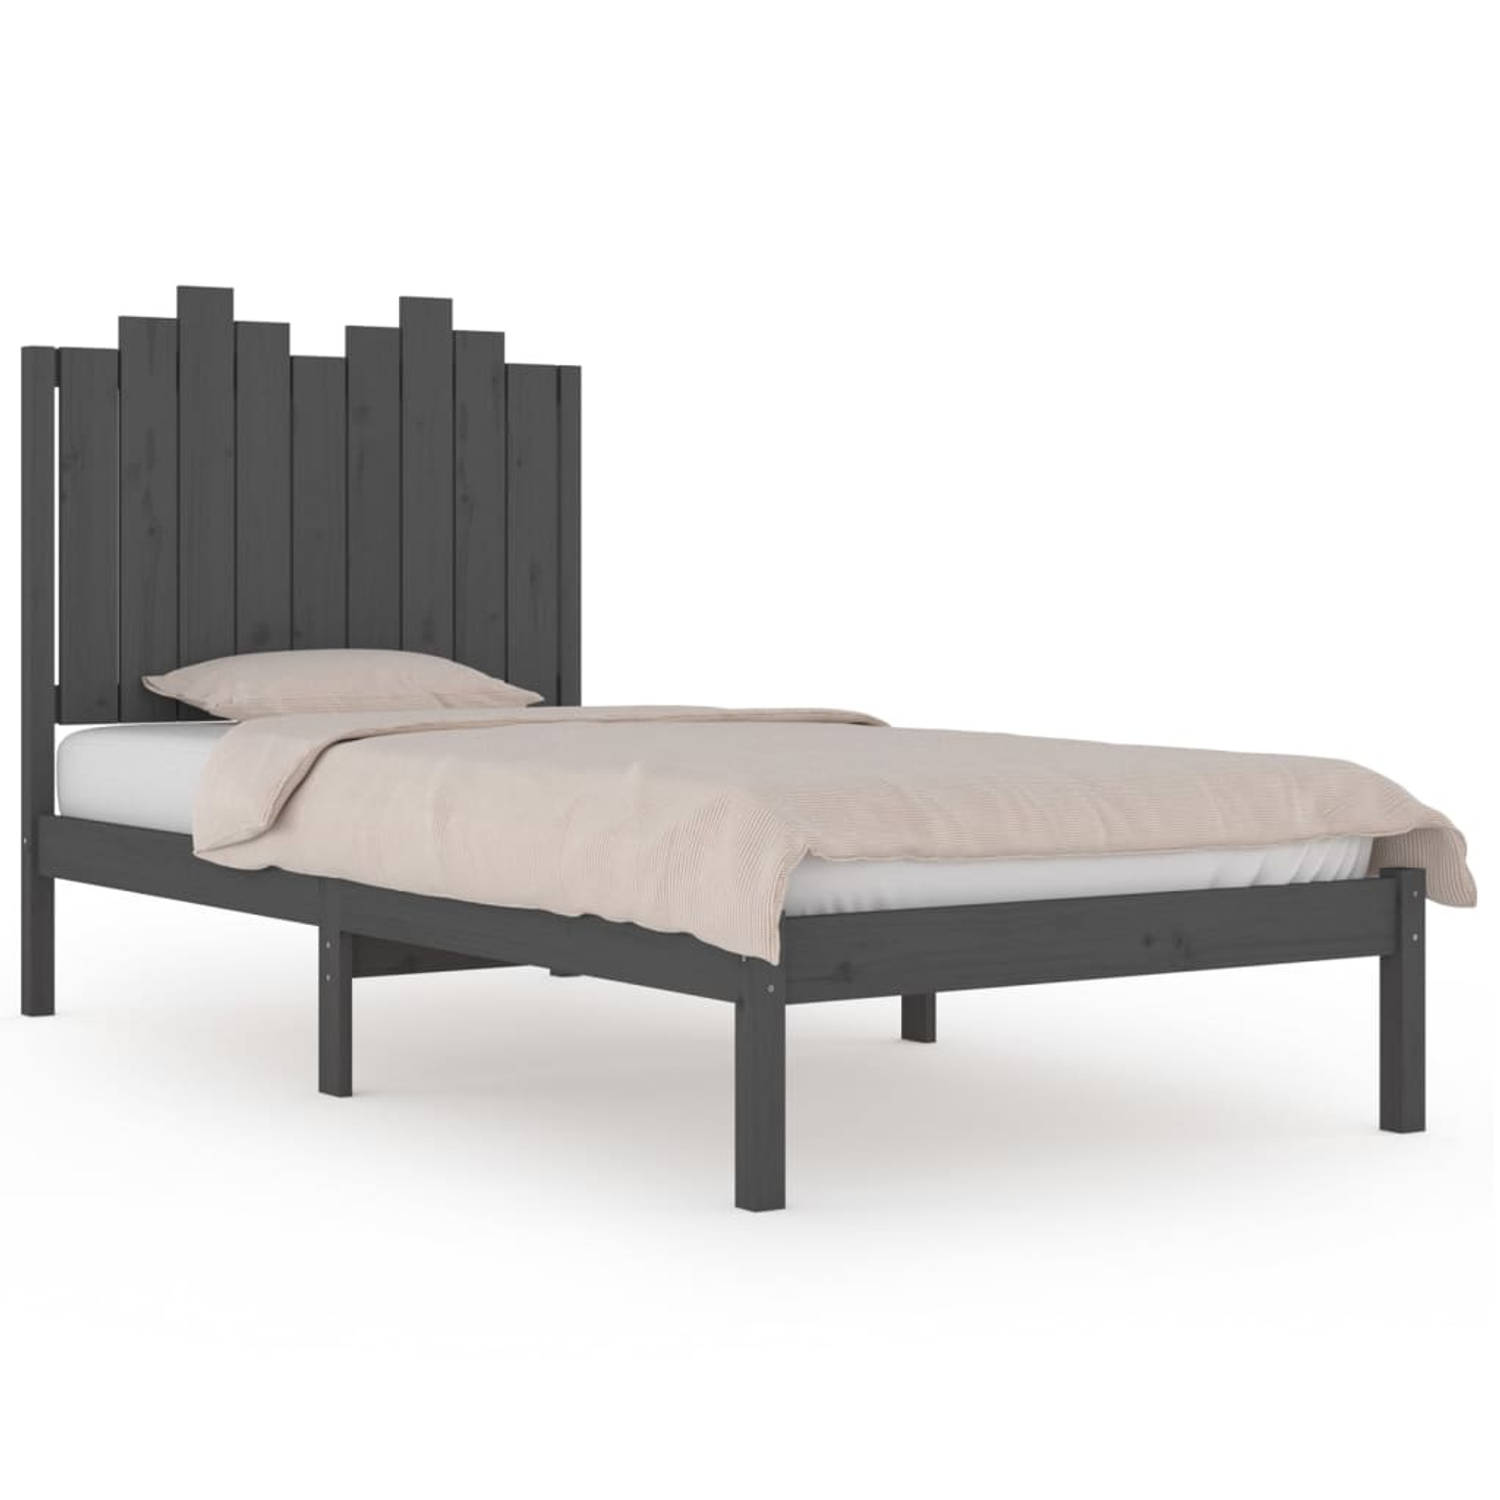 The Living Store Bedframe massief grenenhout grijs 90x190 cm 3FT Single - Bedframe - Bedframes - Eenpersoonsbed - Bed - Bedombouw - Enkel Bed - Frame - Bed Frame - Ledikant - Houte